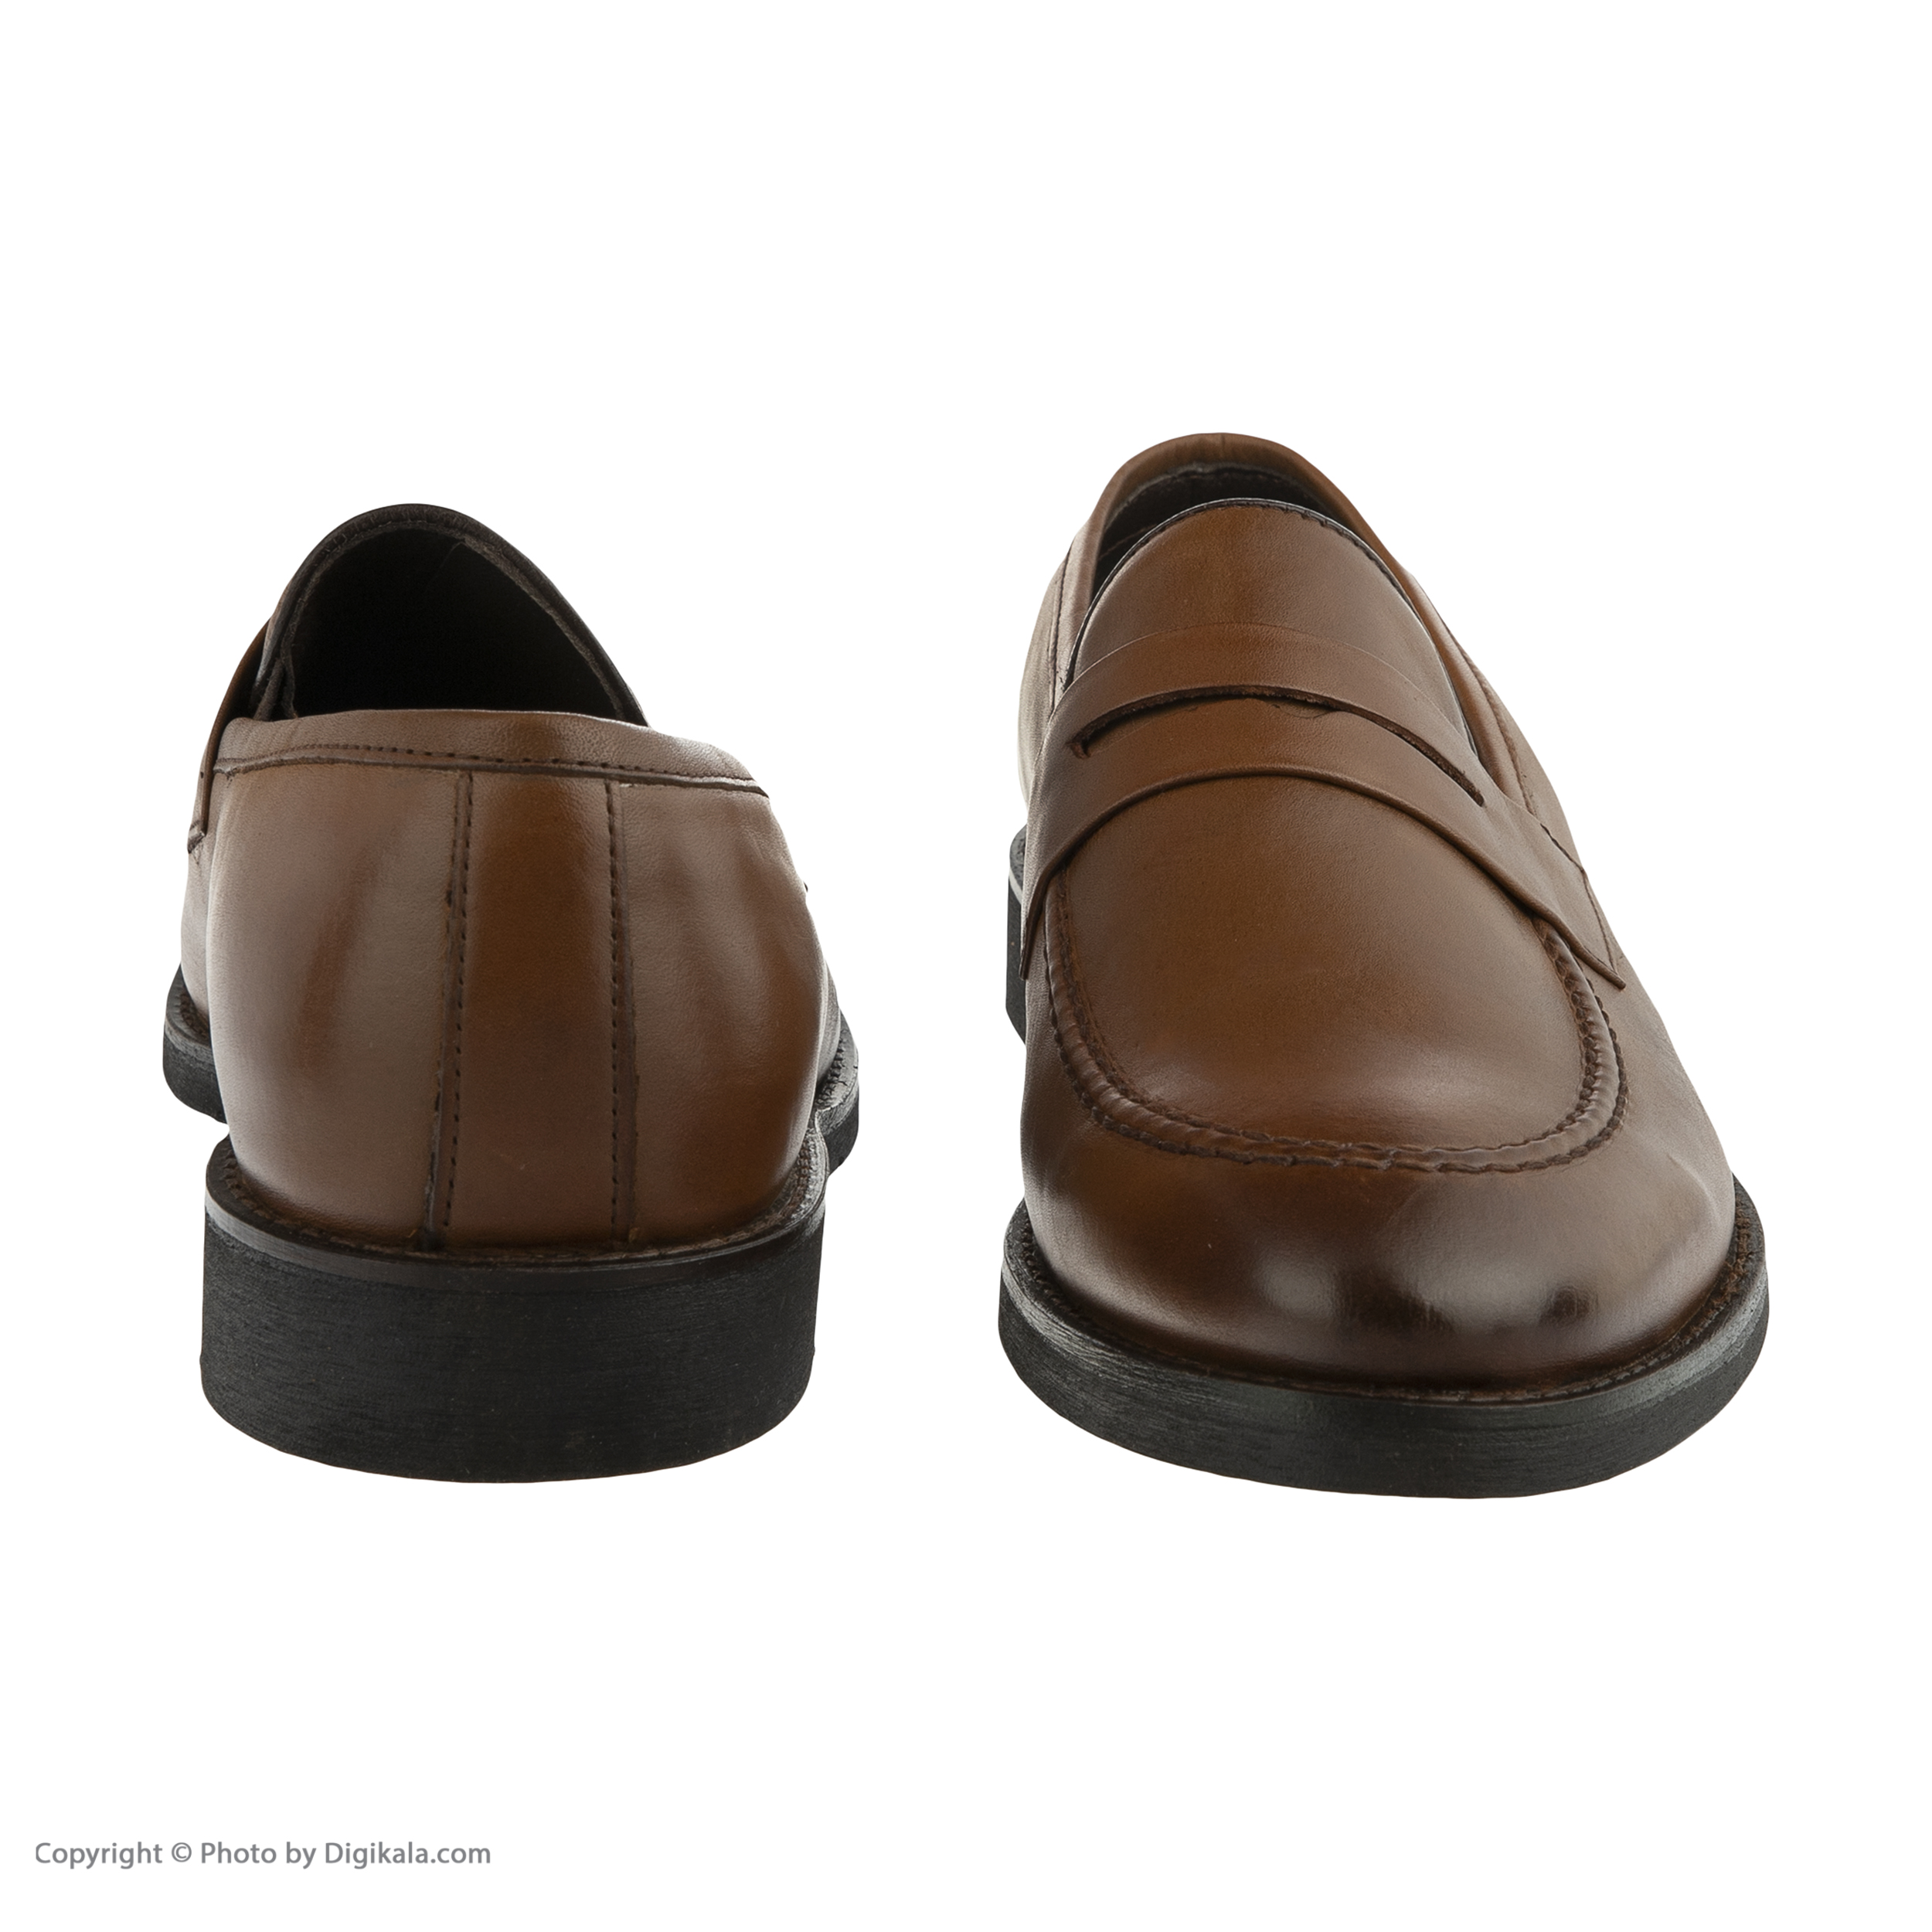  کفش مردانه شیفر مدل 7253C503136